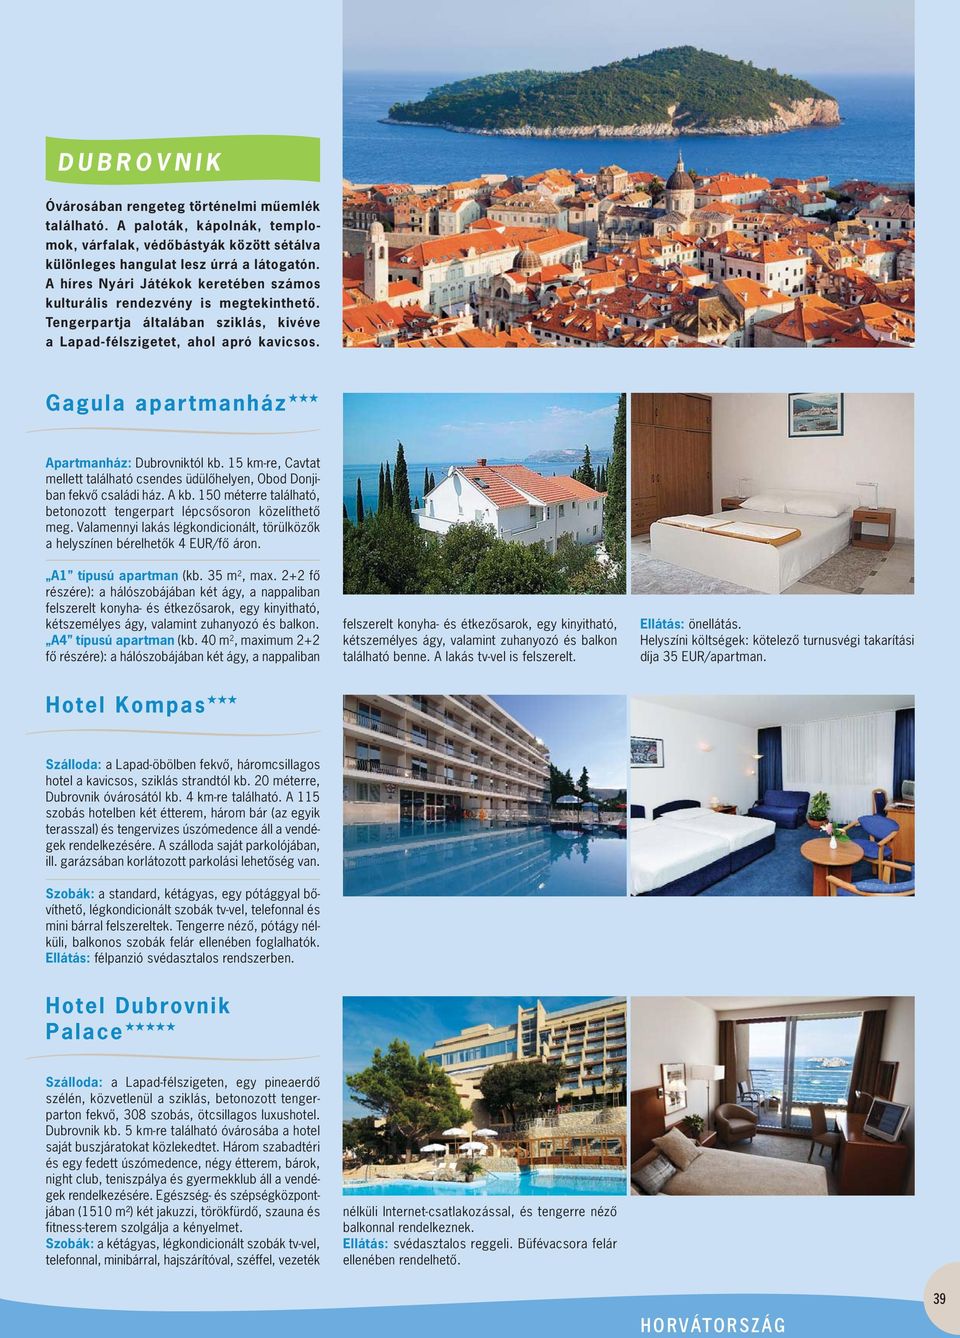 Gagula apartmanház Apartmanház: Dubrovniktól kb. 15 km-re, Cavtat mellett található csendes üdülôhelyen, Obod Donji - ban fekvô családi ház. A kb.